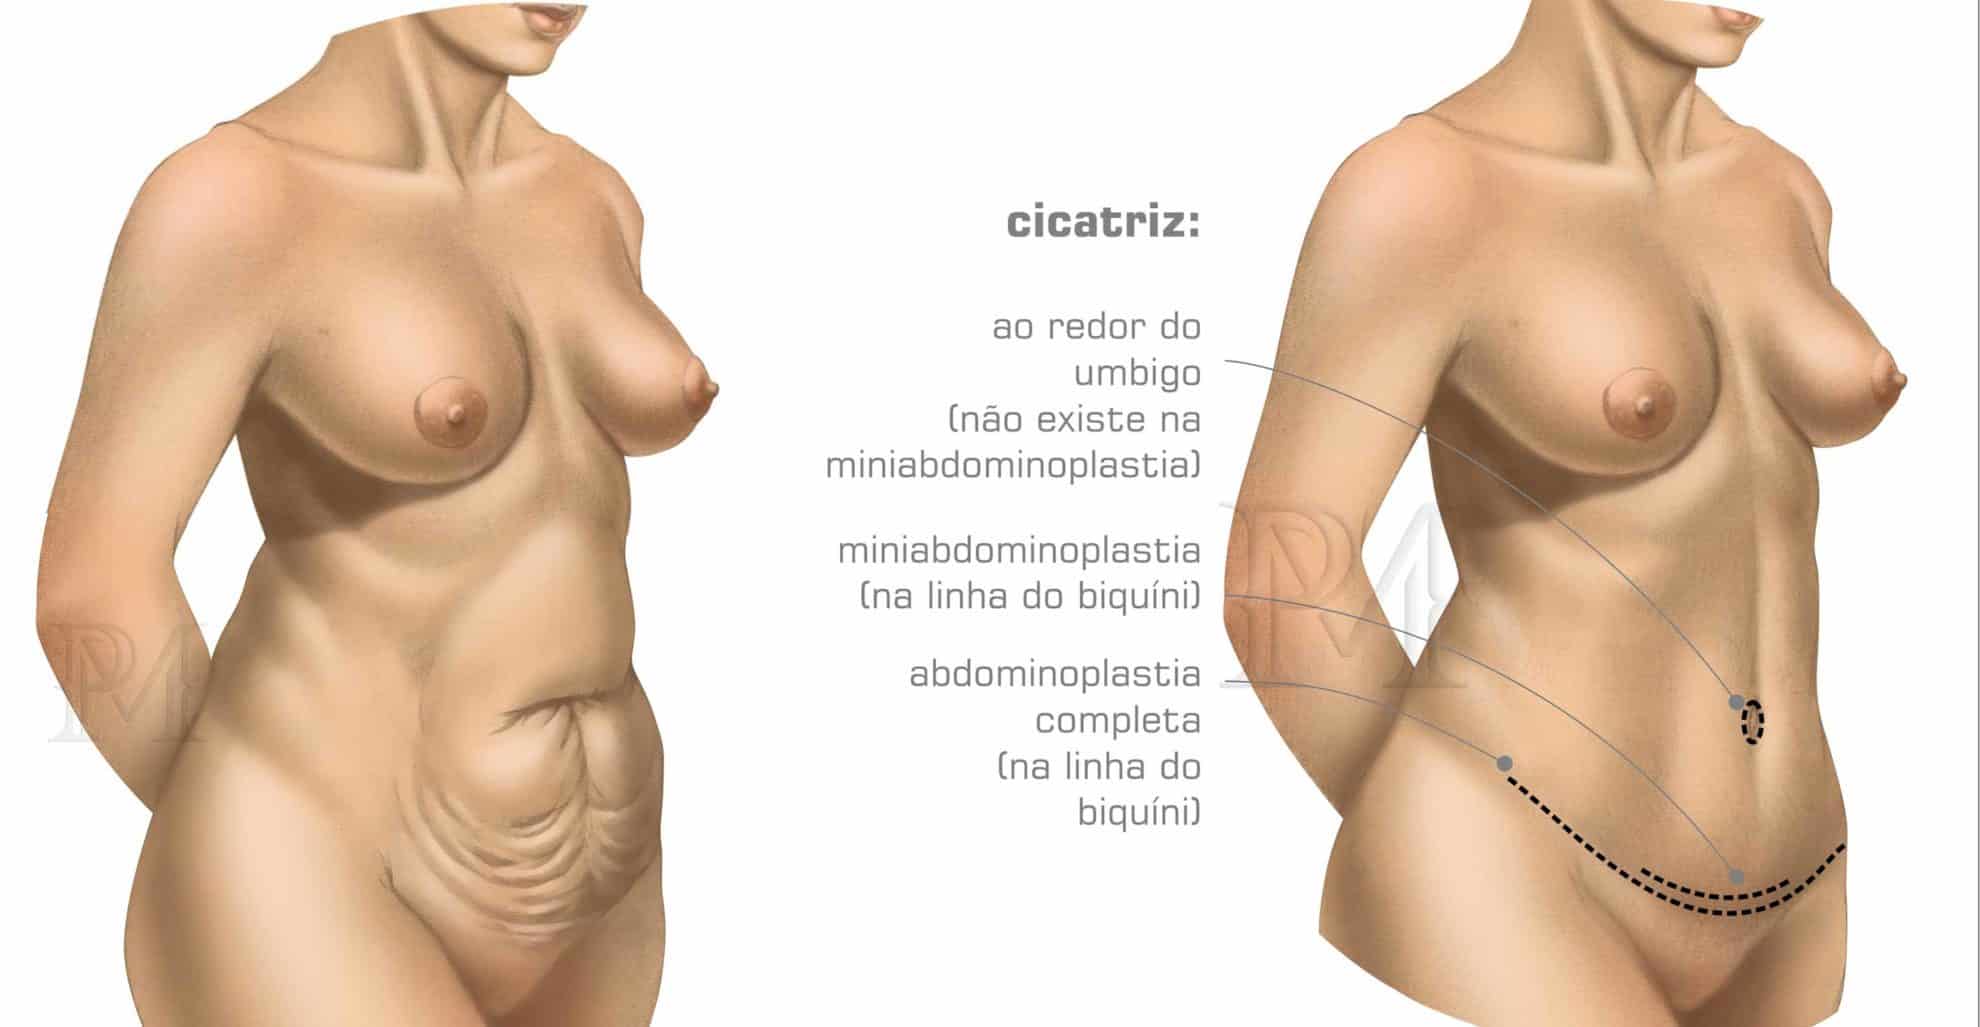 Abdominoplastia em Porto Alegre - Antes e Depois - Dr. Daniel Pinheiro Machado | Cirurgião Plástico